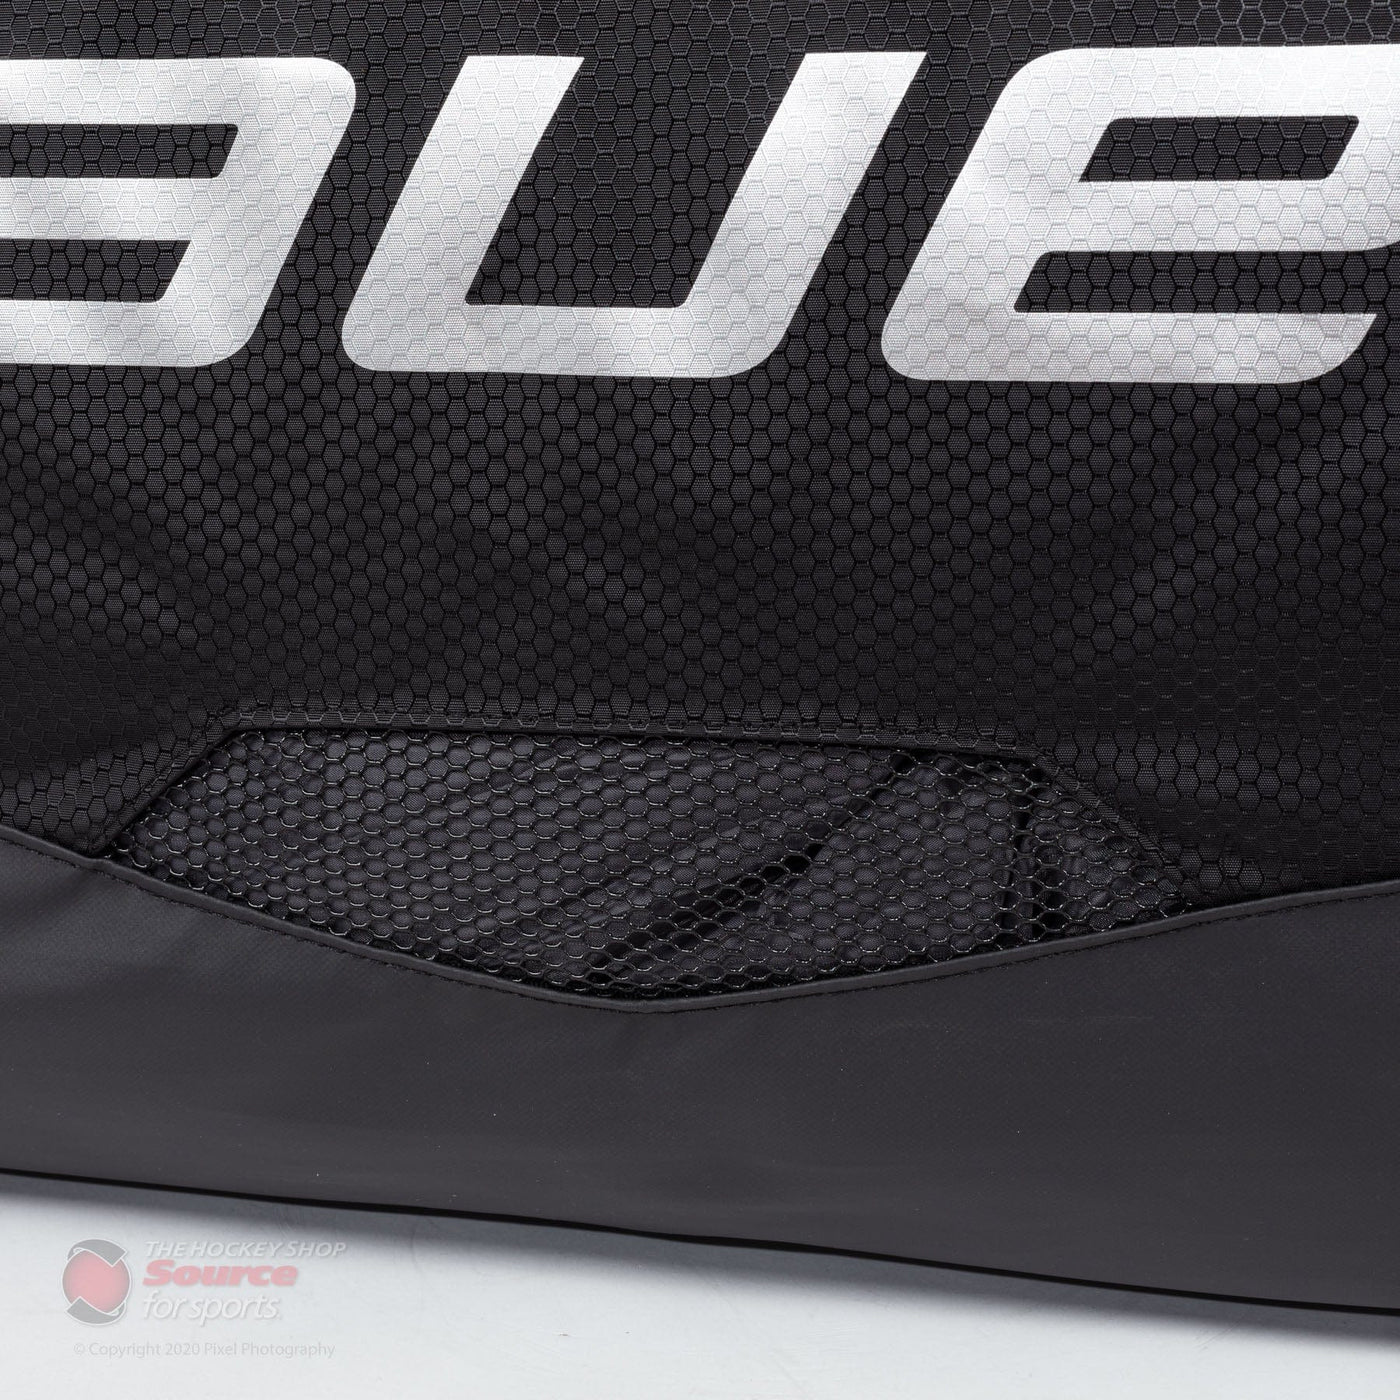 Bauer Premium Senior Goalie Wheel Bag (2019)